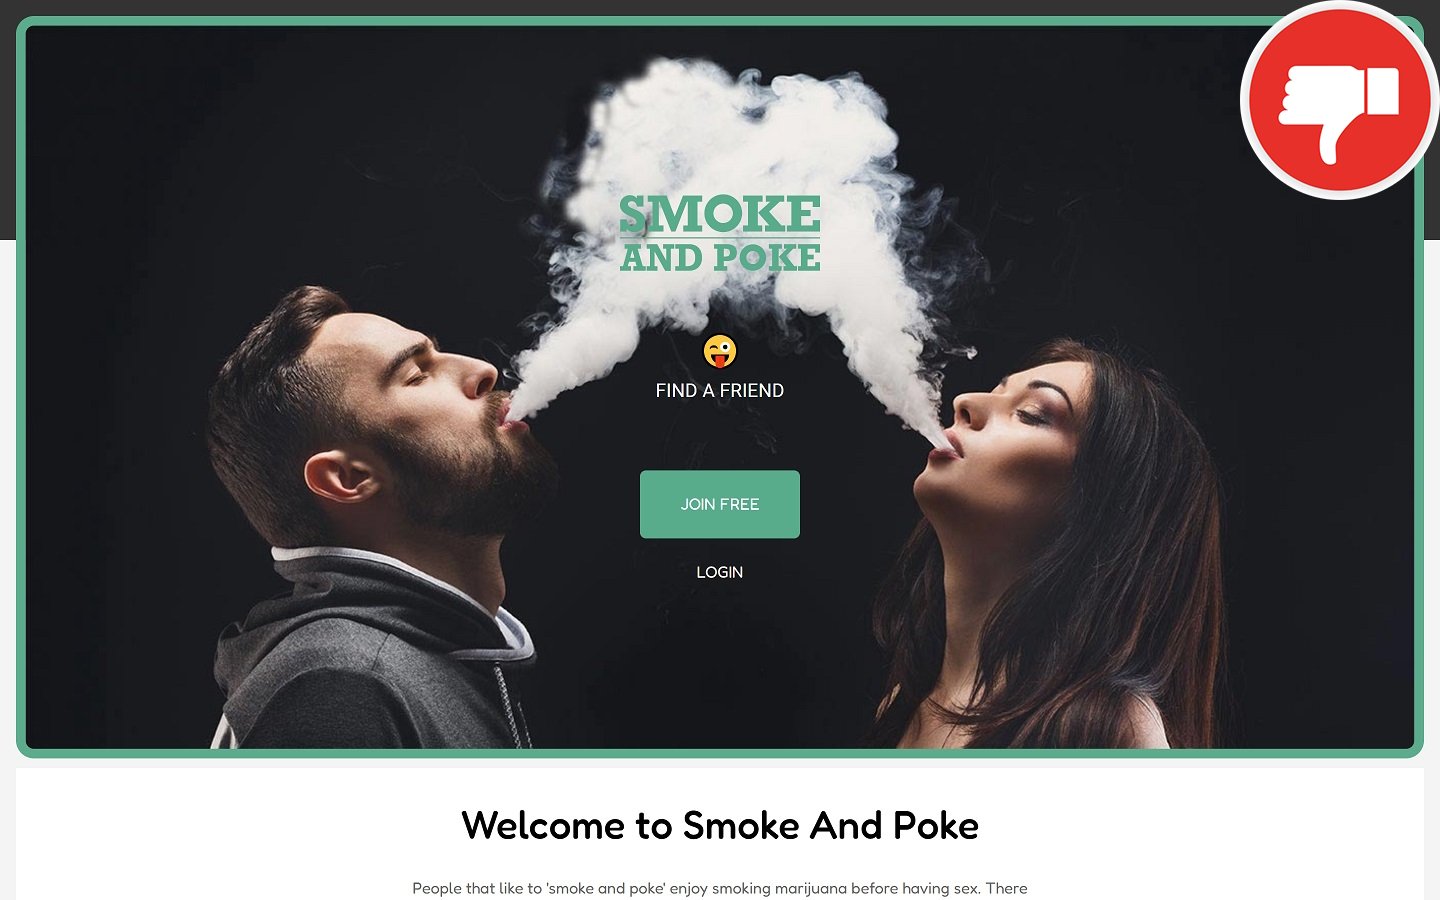 Review SmokeAndPoke.com scam experience